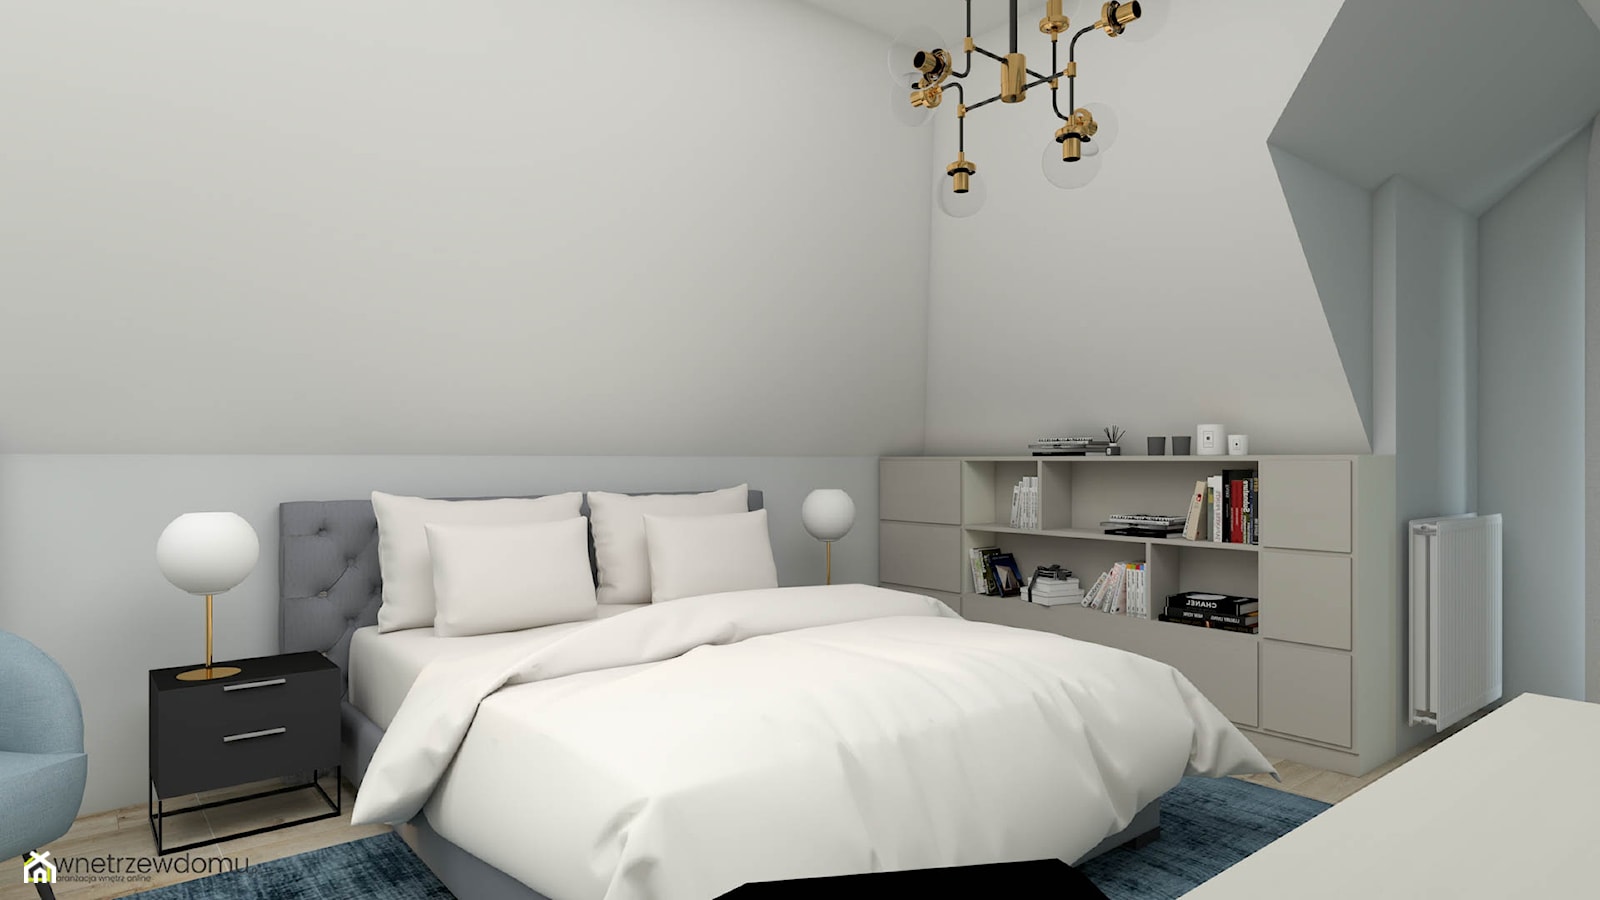 Jasna, przestronna sypialnia z oryginalnąą tapetą - zdjęcie od wnetrzewdomu - Homebook